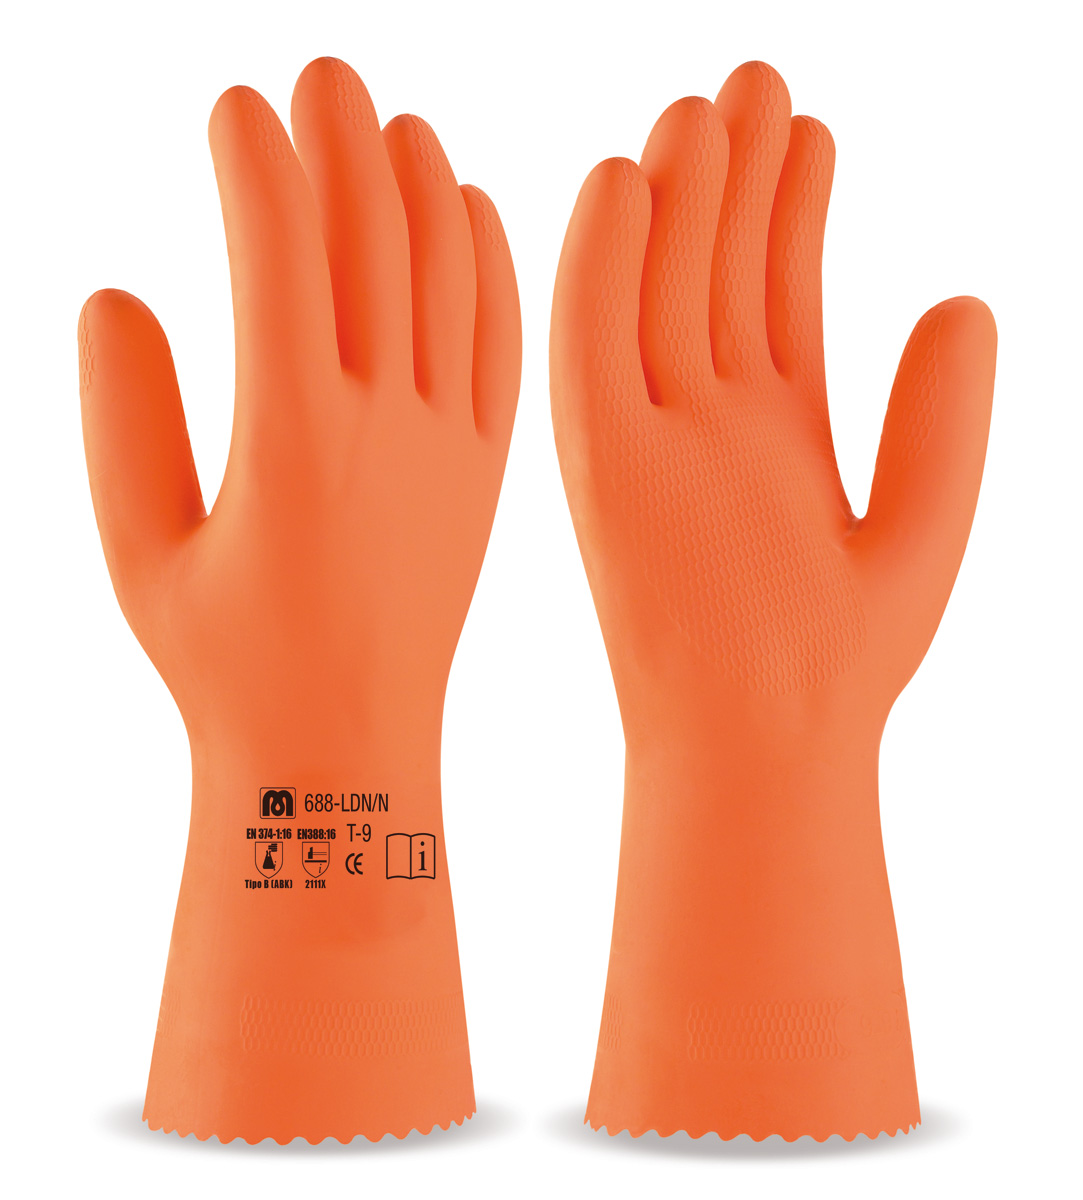 688-LDN/N Guantes de Trabajo Latex sin soporte Guante tipo industrial de látex en color naranja para riesgos mecánicos, químicos y microorganismos.